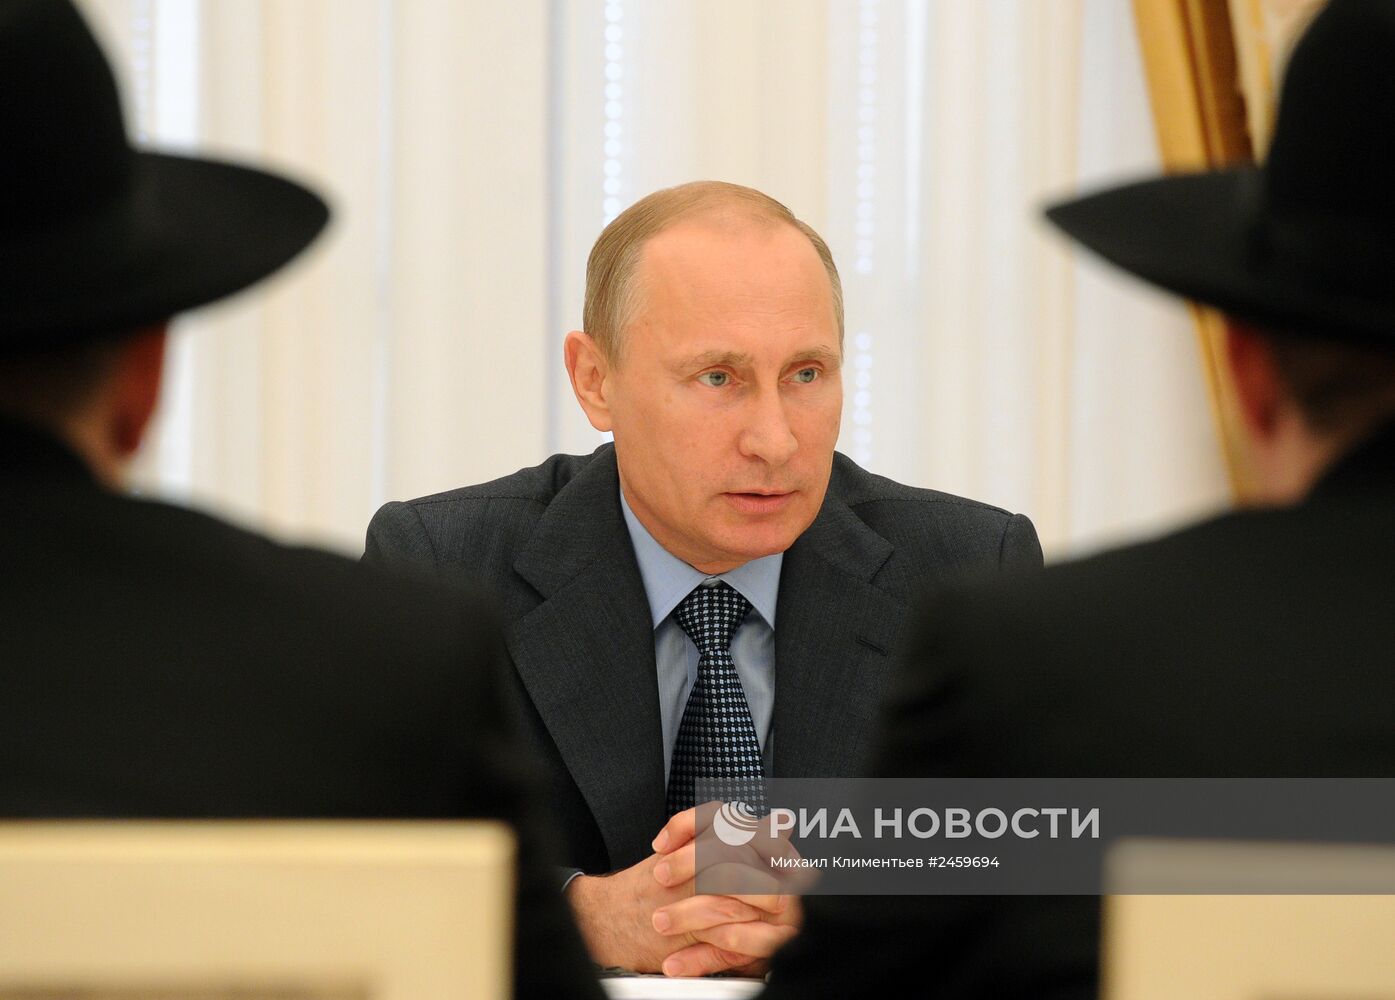 Встреча В.Путина с делегацией раввинов из ряда зарубежных стран